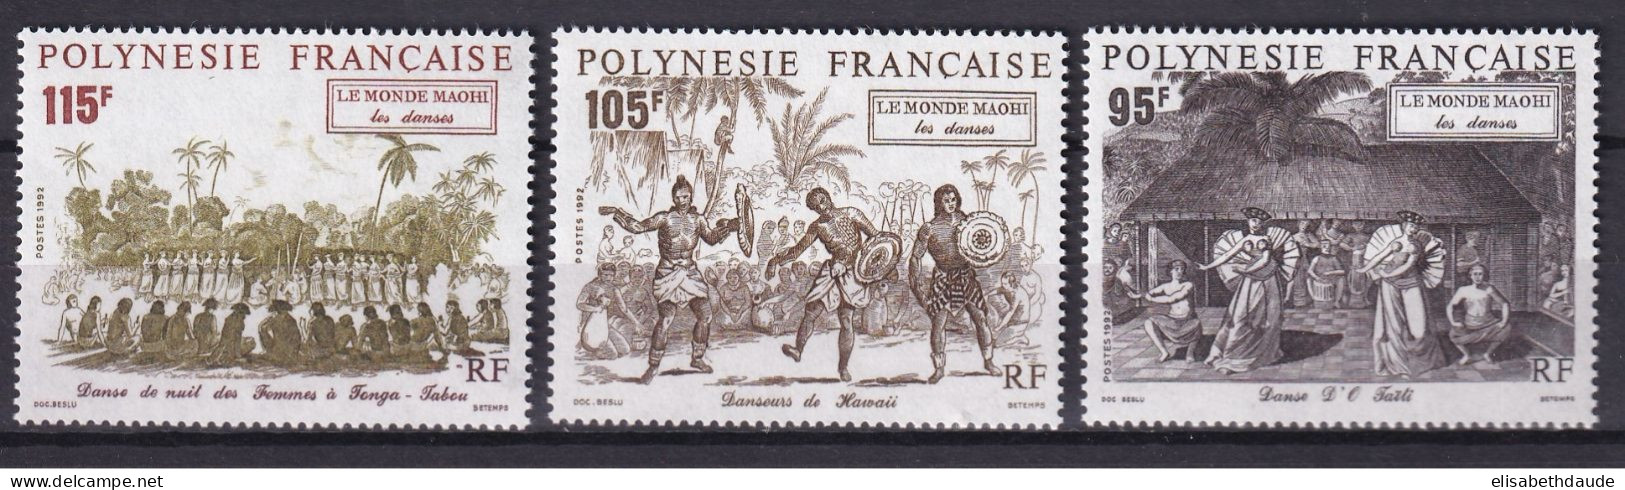 POLYNESIE - 1992 - PORT GRATUIT A PARTIR DE 5 EUR. D'ACHAT - YVERT N° 410/412 ** MNH - DANSES - COTE = 7.65 EUR. - Nuevos